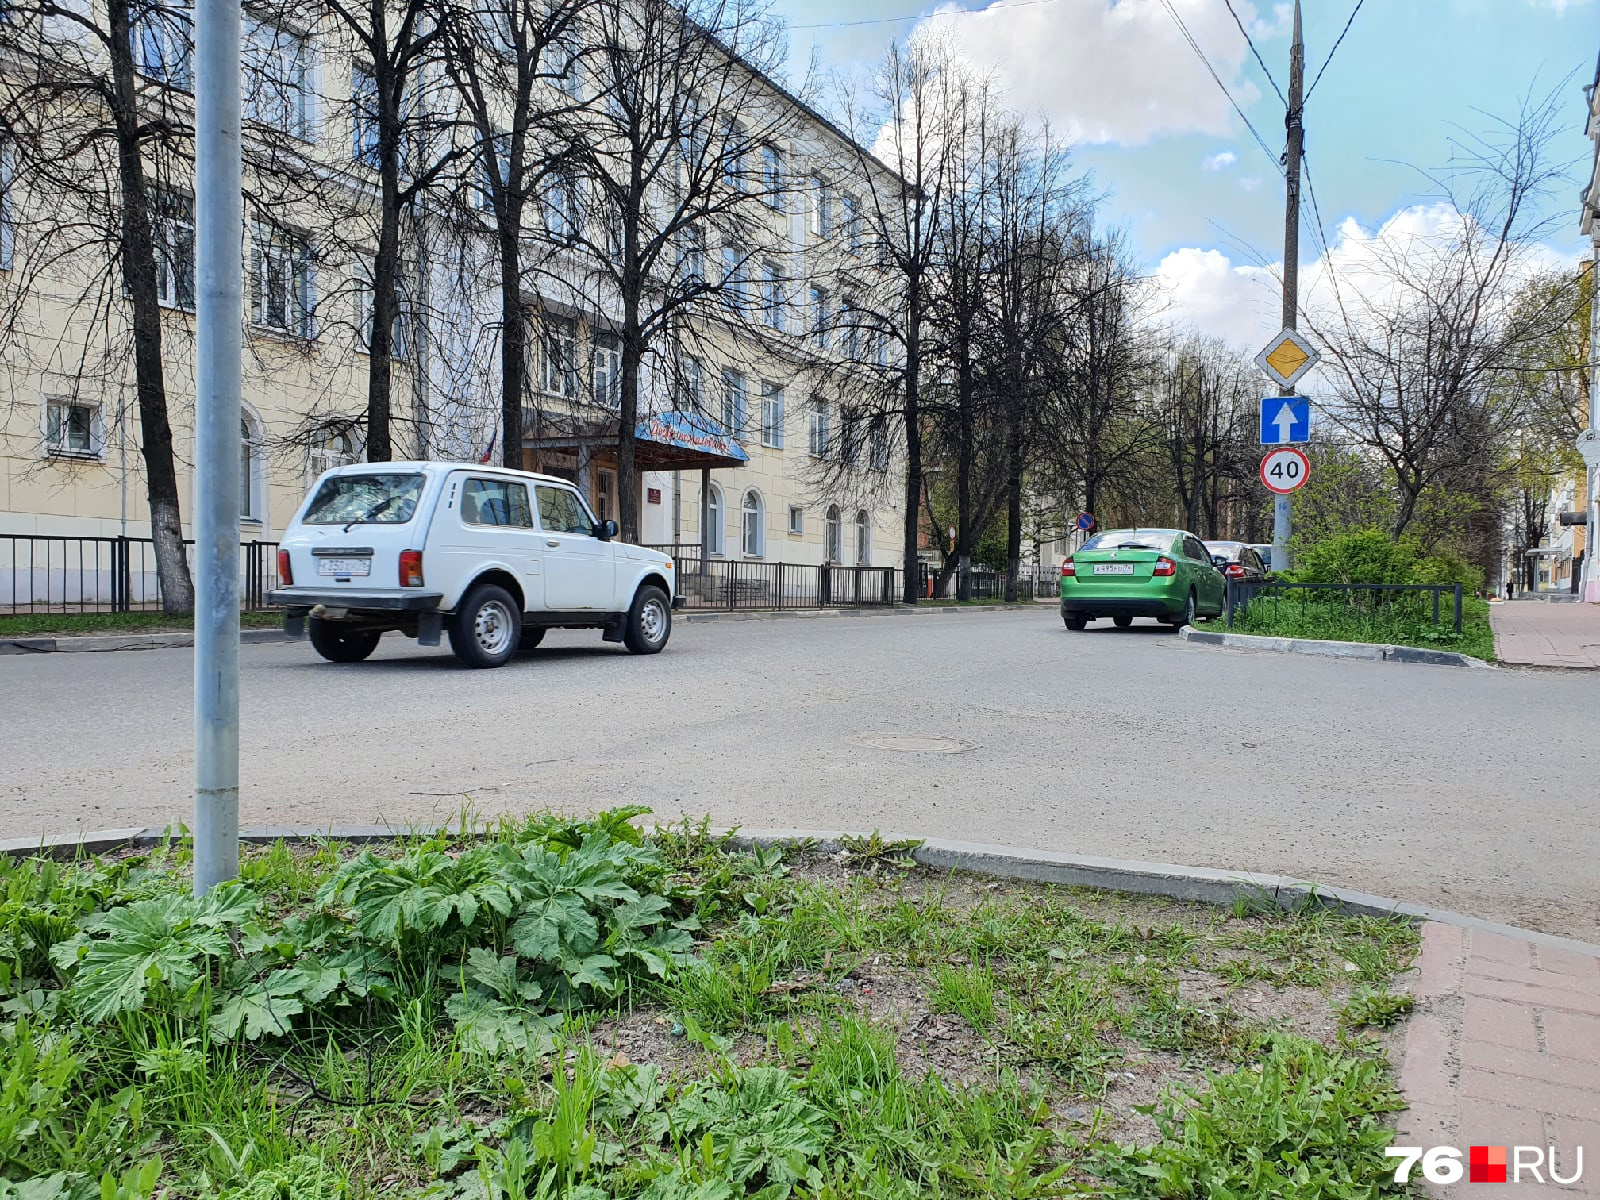 Борщевик тоже зеленеет на центральных улицах Ярославля